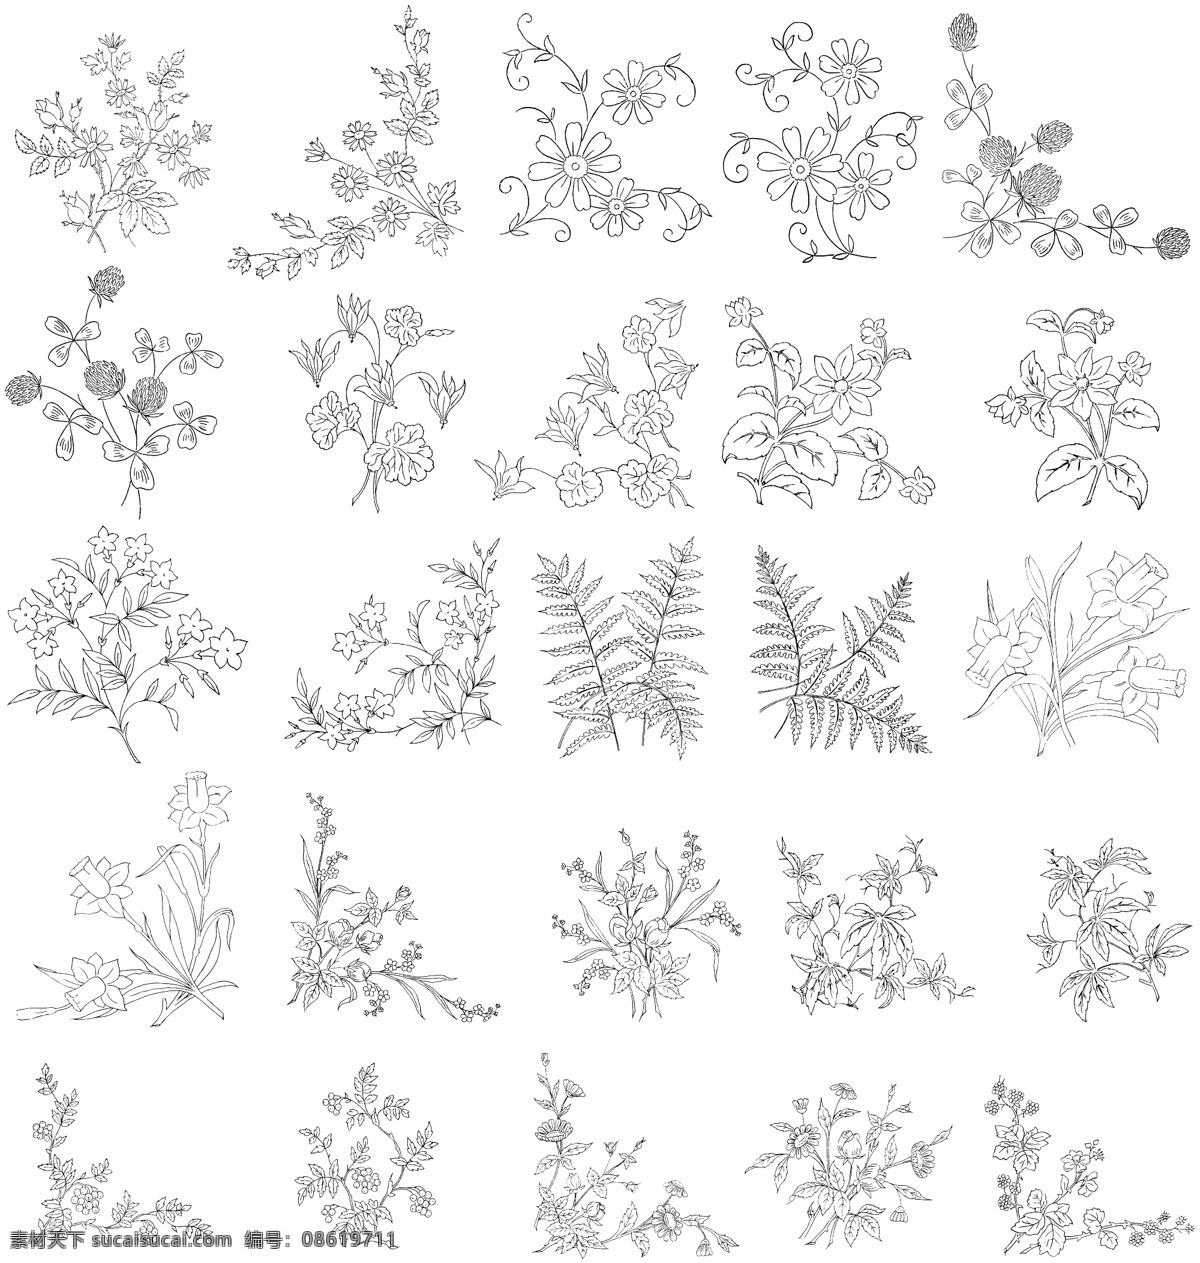 白描 花卉 植物 线 稿 线稿 实用 秘密花园 漫画 相关 底纹边框 花边花纹